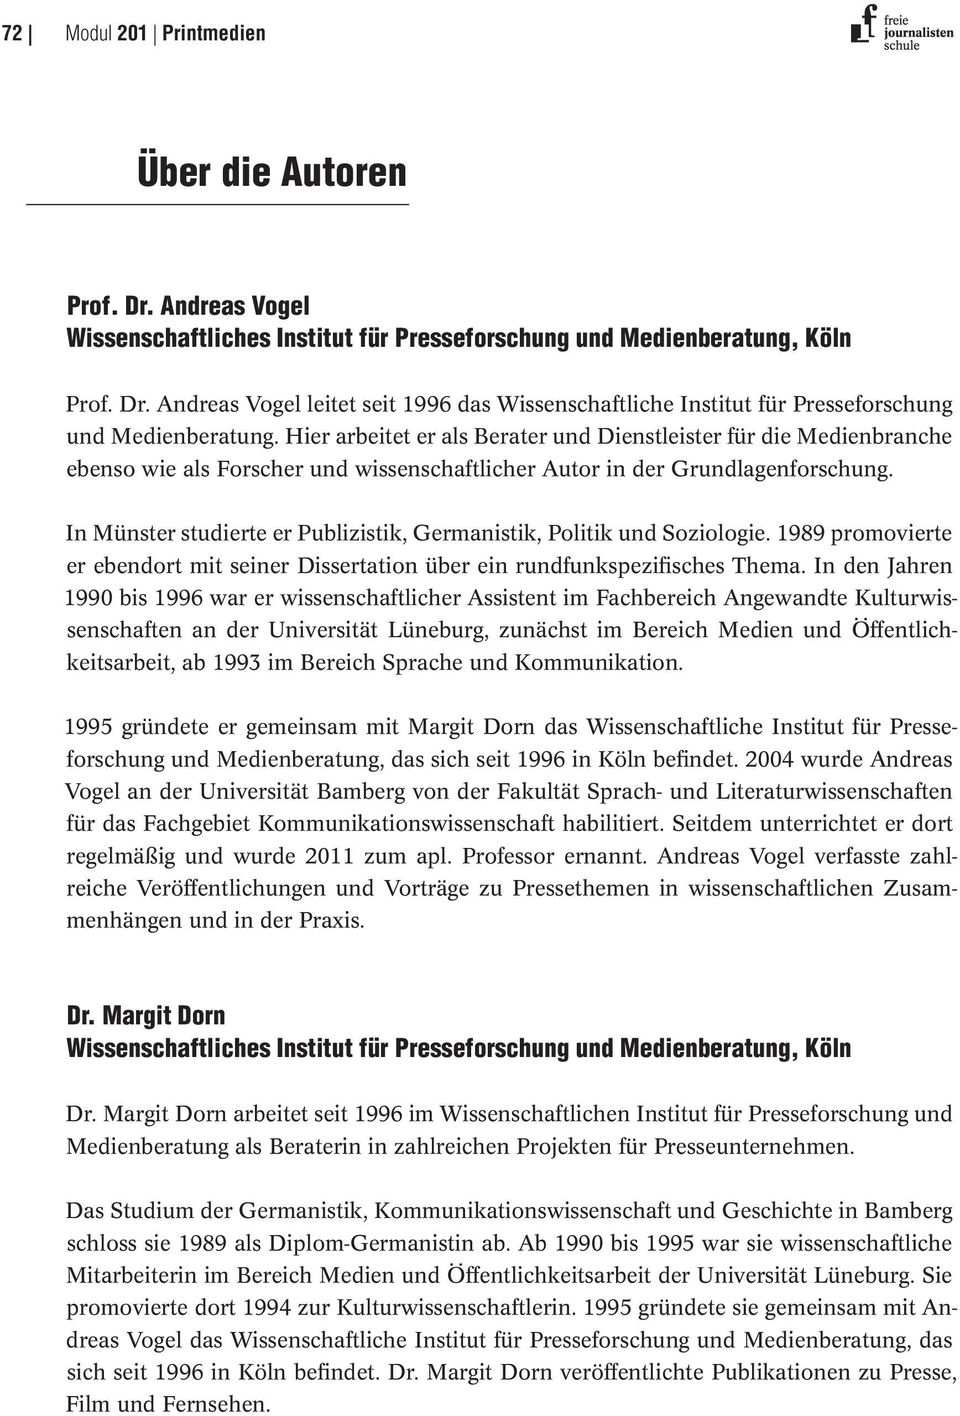 In Münster studierte er Publizistik, Germanistik, Politik und Soziologie. 1989 promovierte er ebendort mit seiner Dissertation über ein rundfunkspezifisches Thema.